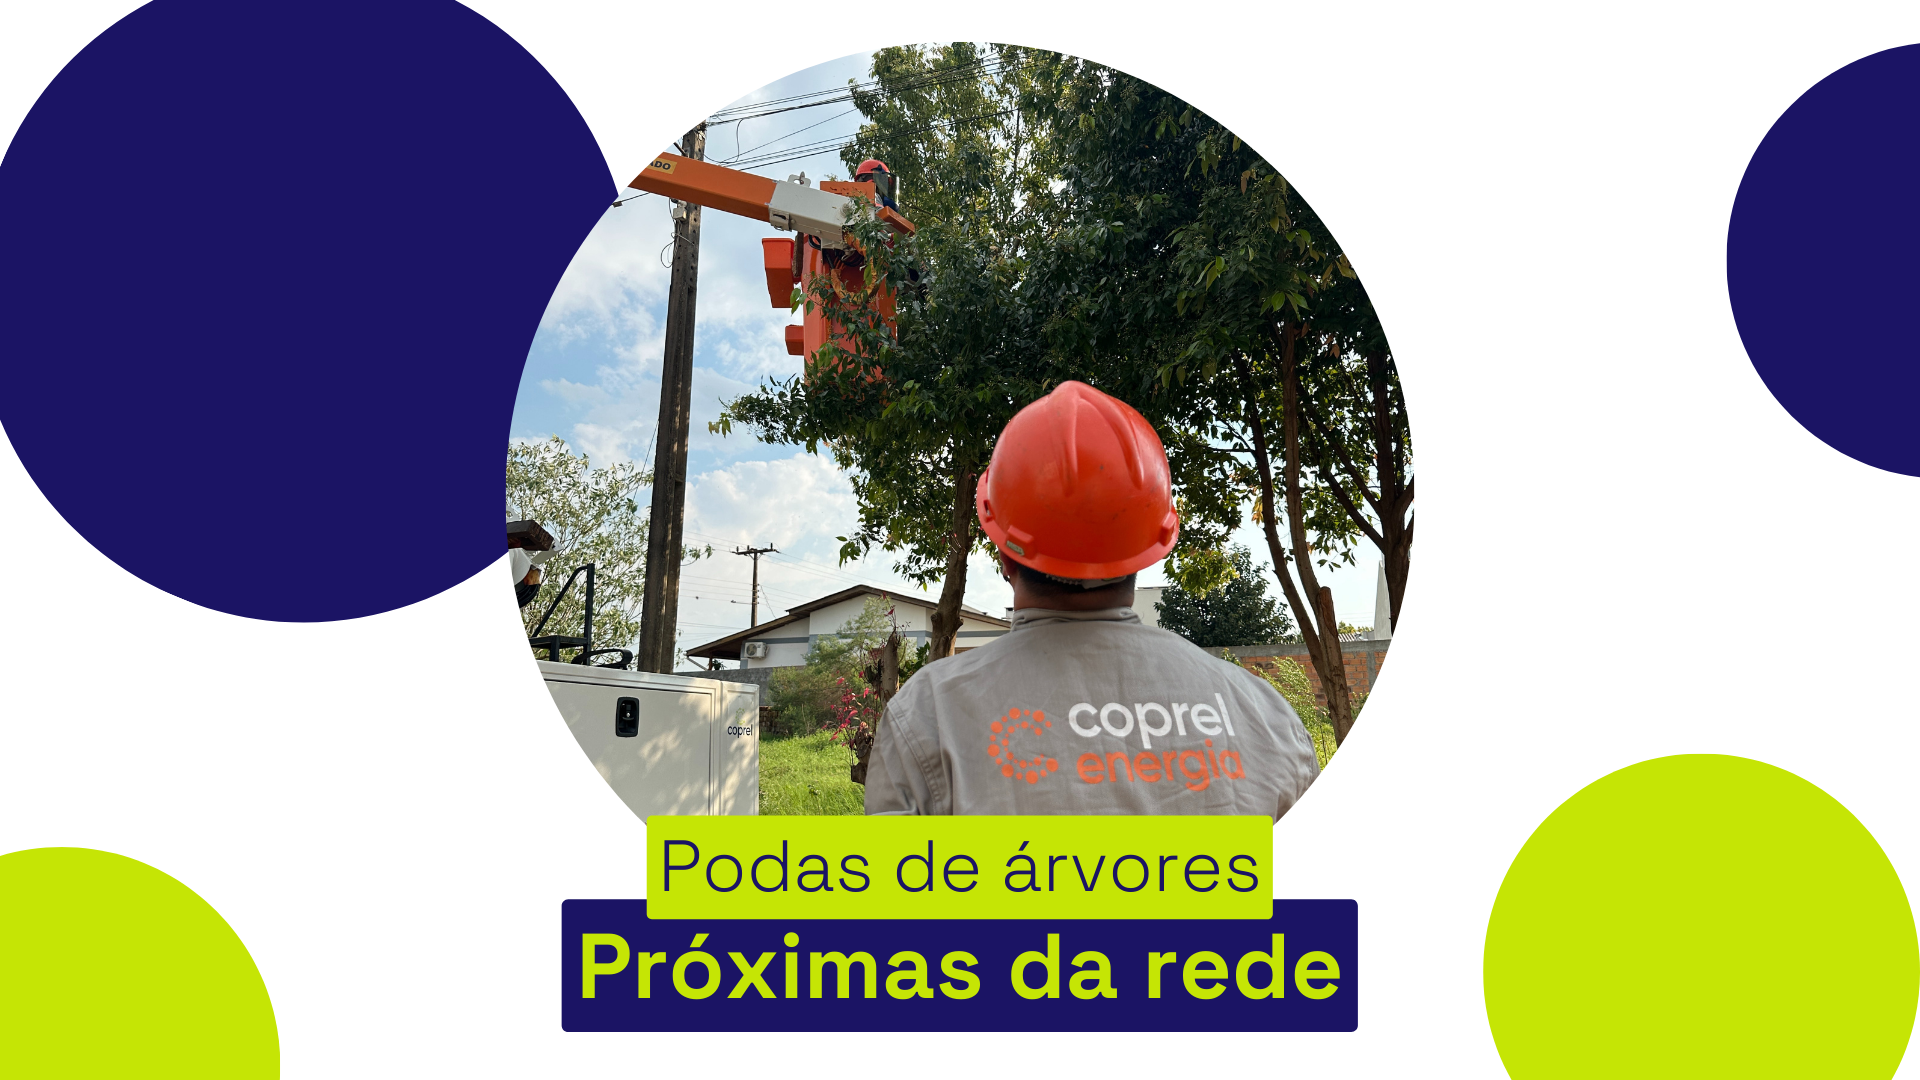 A Coprel possui equipes habilitadas para o serviço de podas de árvores